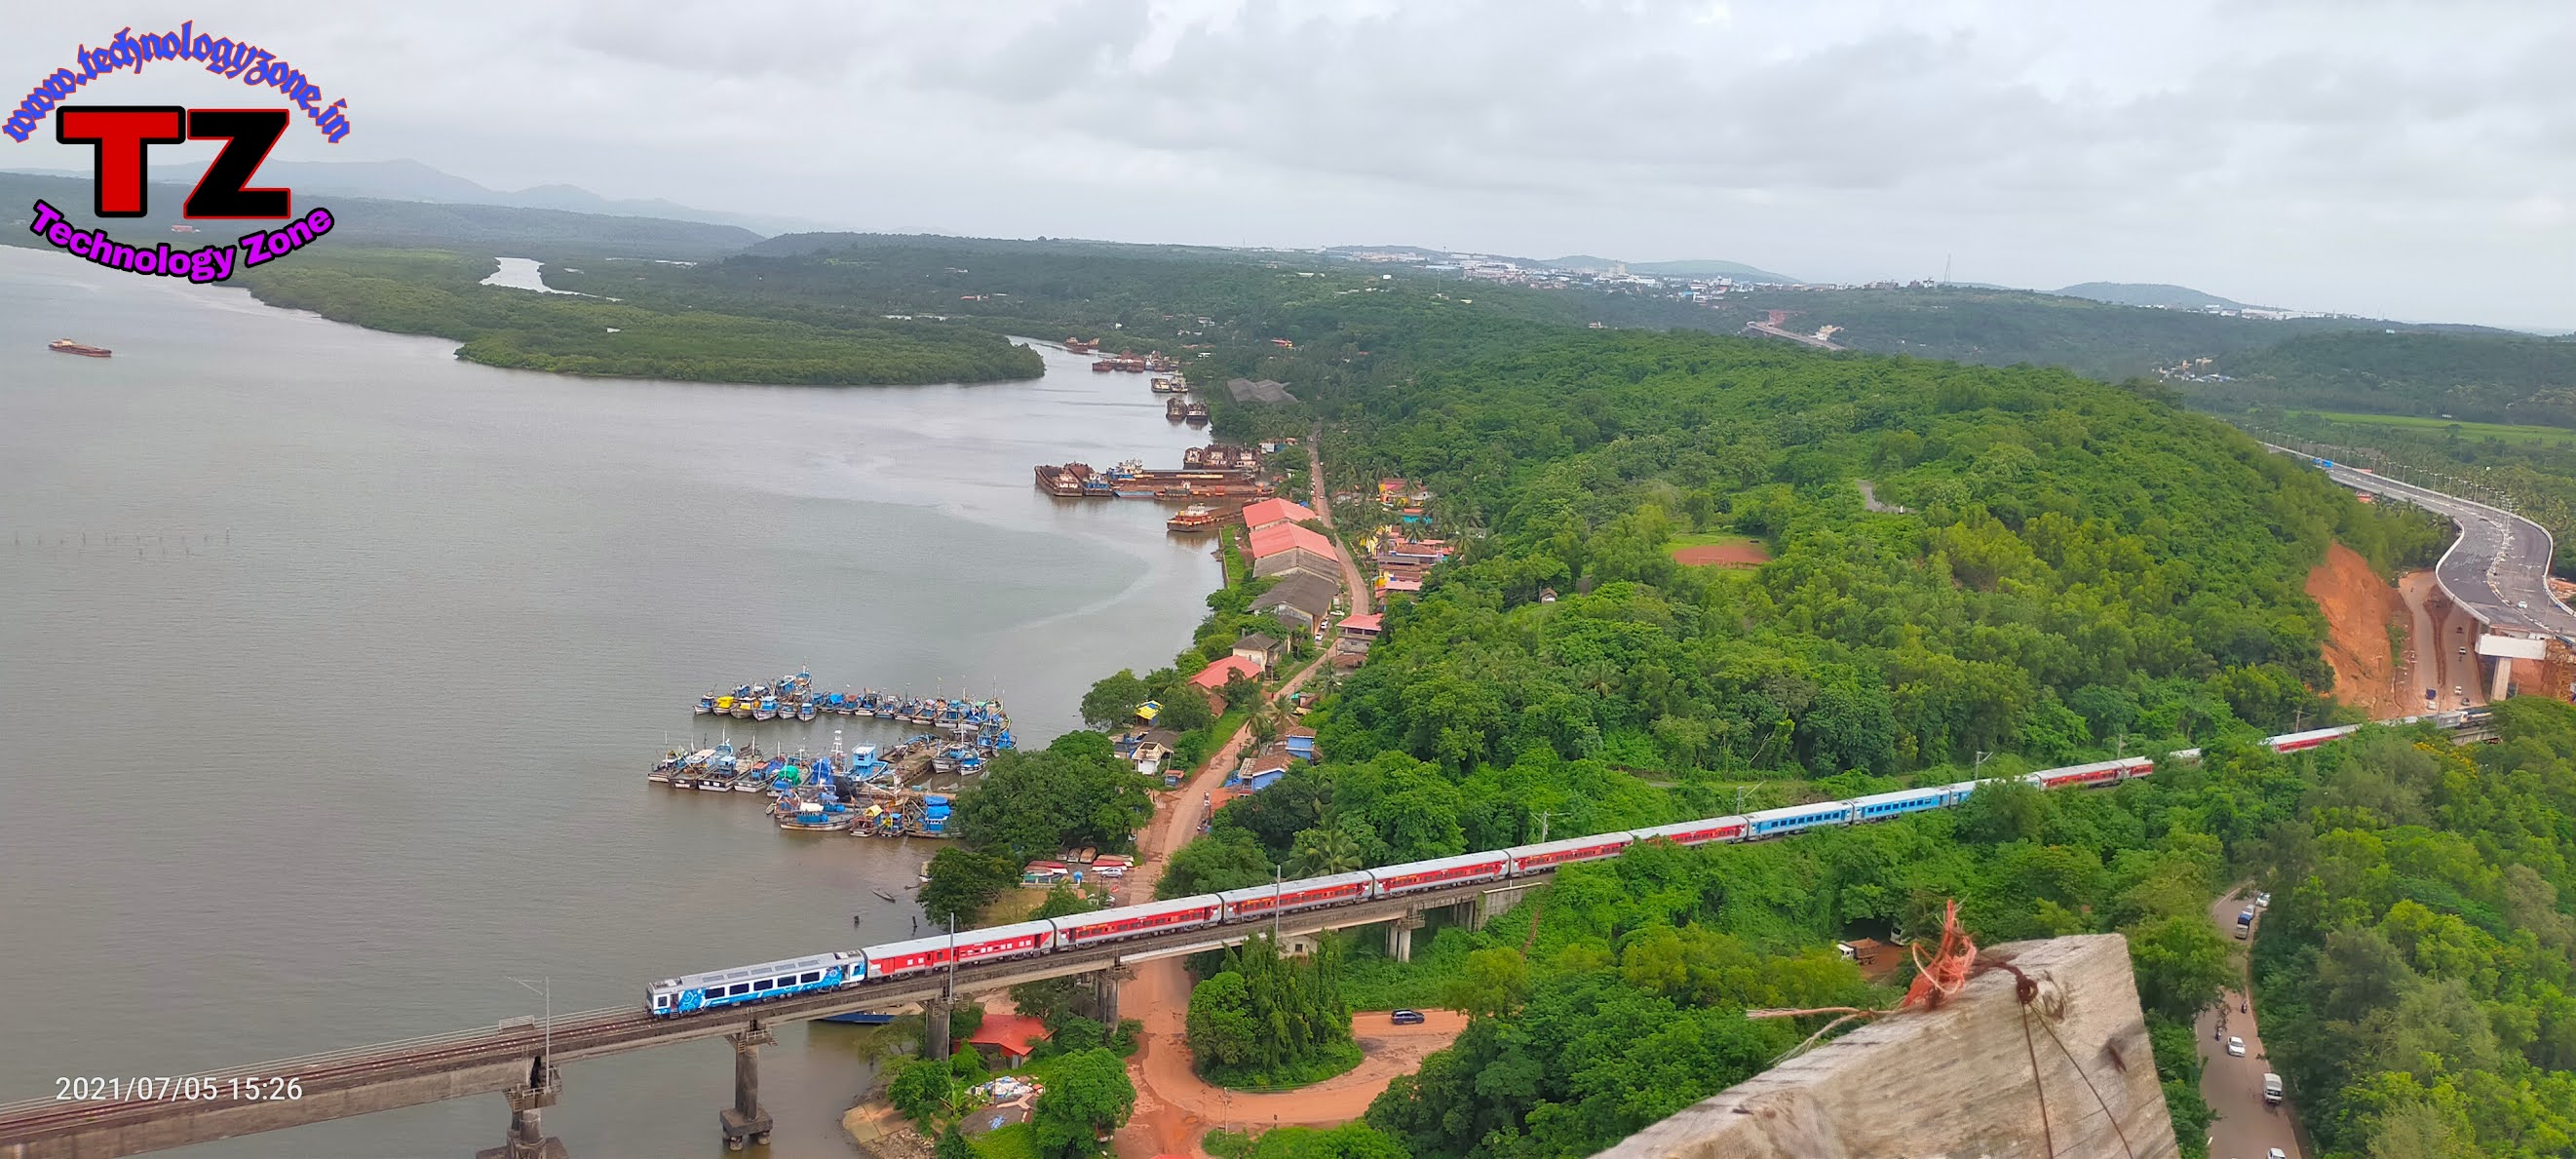 The New Zuari Bridge at Goa